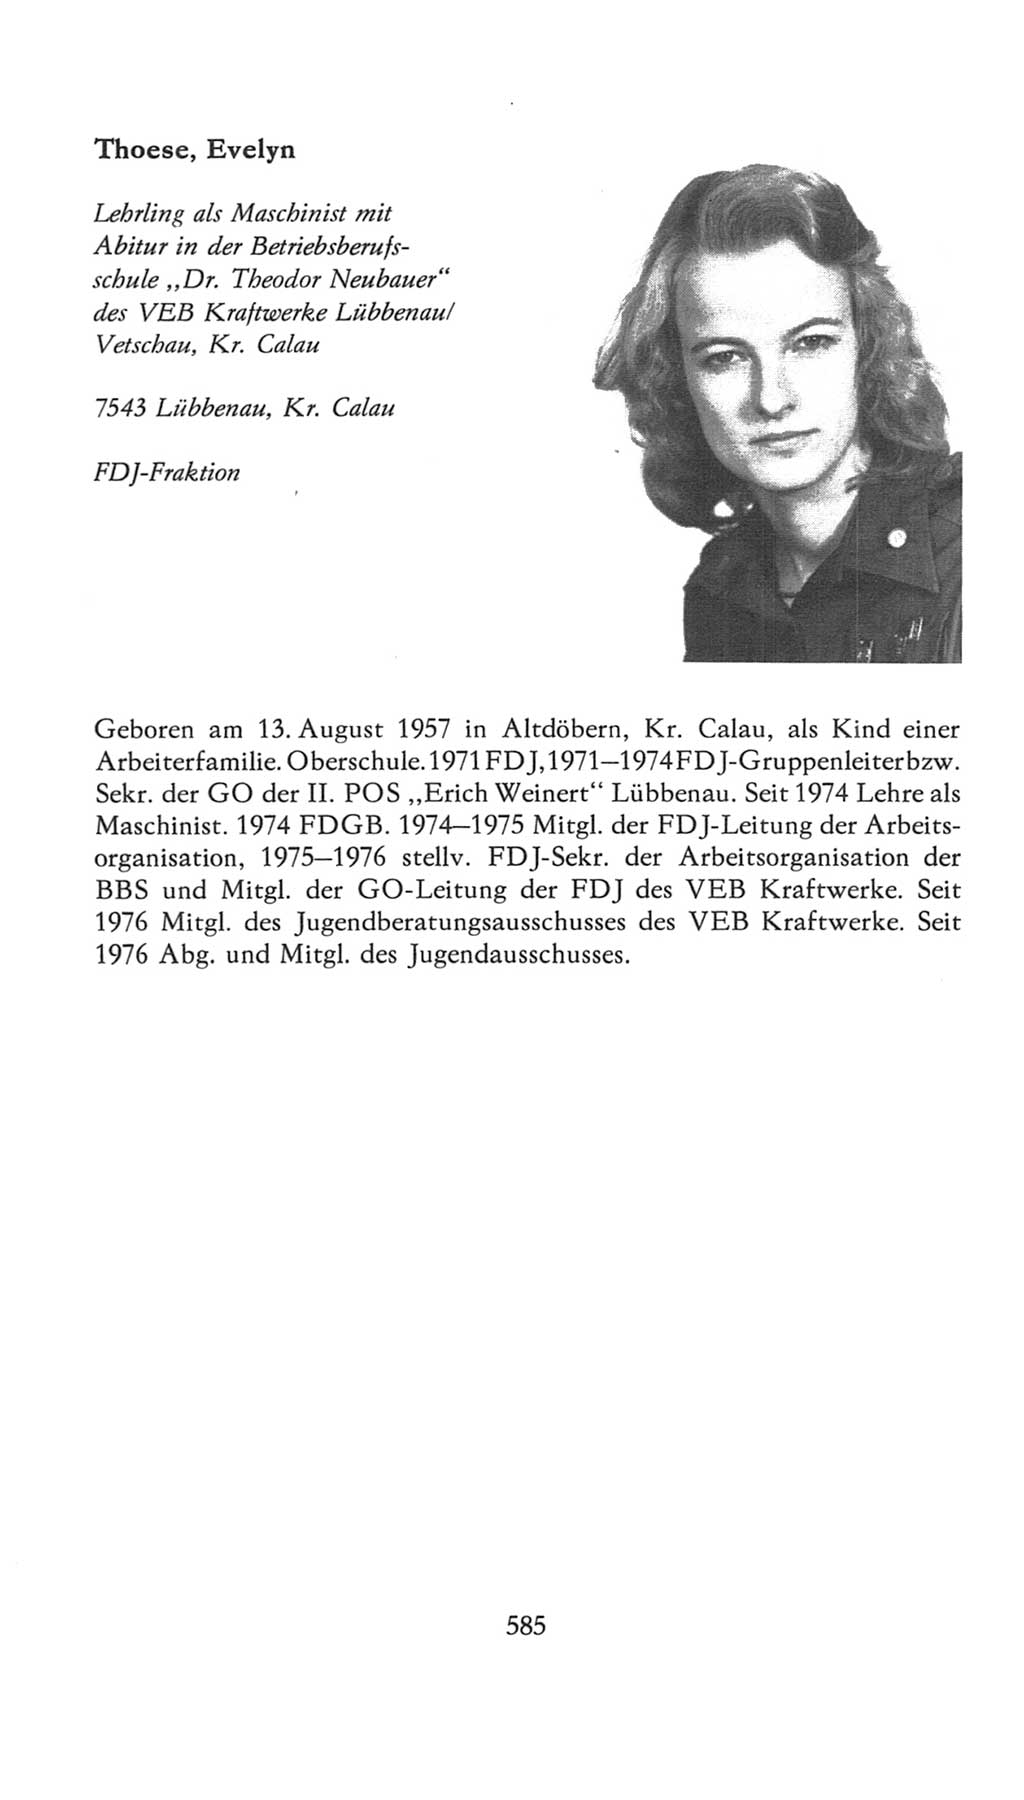 Volkskammer (VK) der Deutschen Demokratischen Republik (DDR), 7. Wahlperiode 1976-1981, Seite 585 (VK. DDR 7. WP. 1976-1981, S. 585)